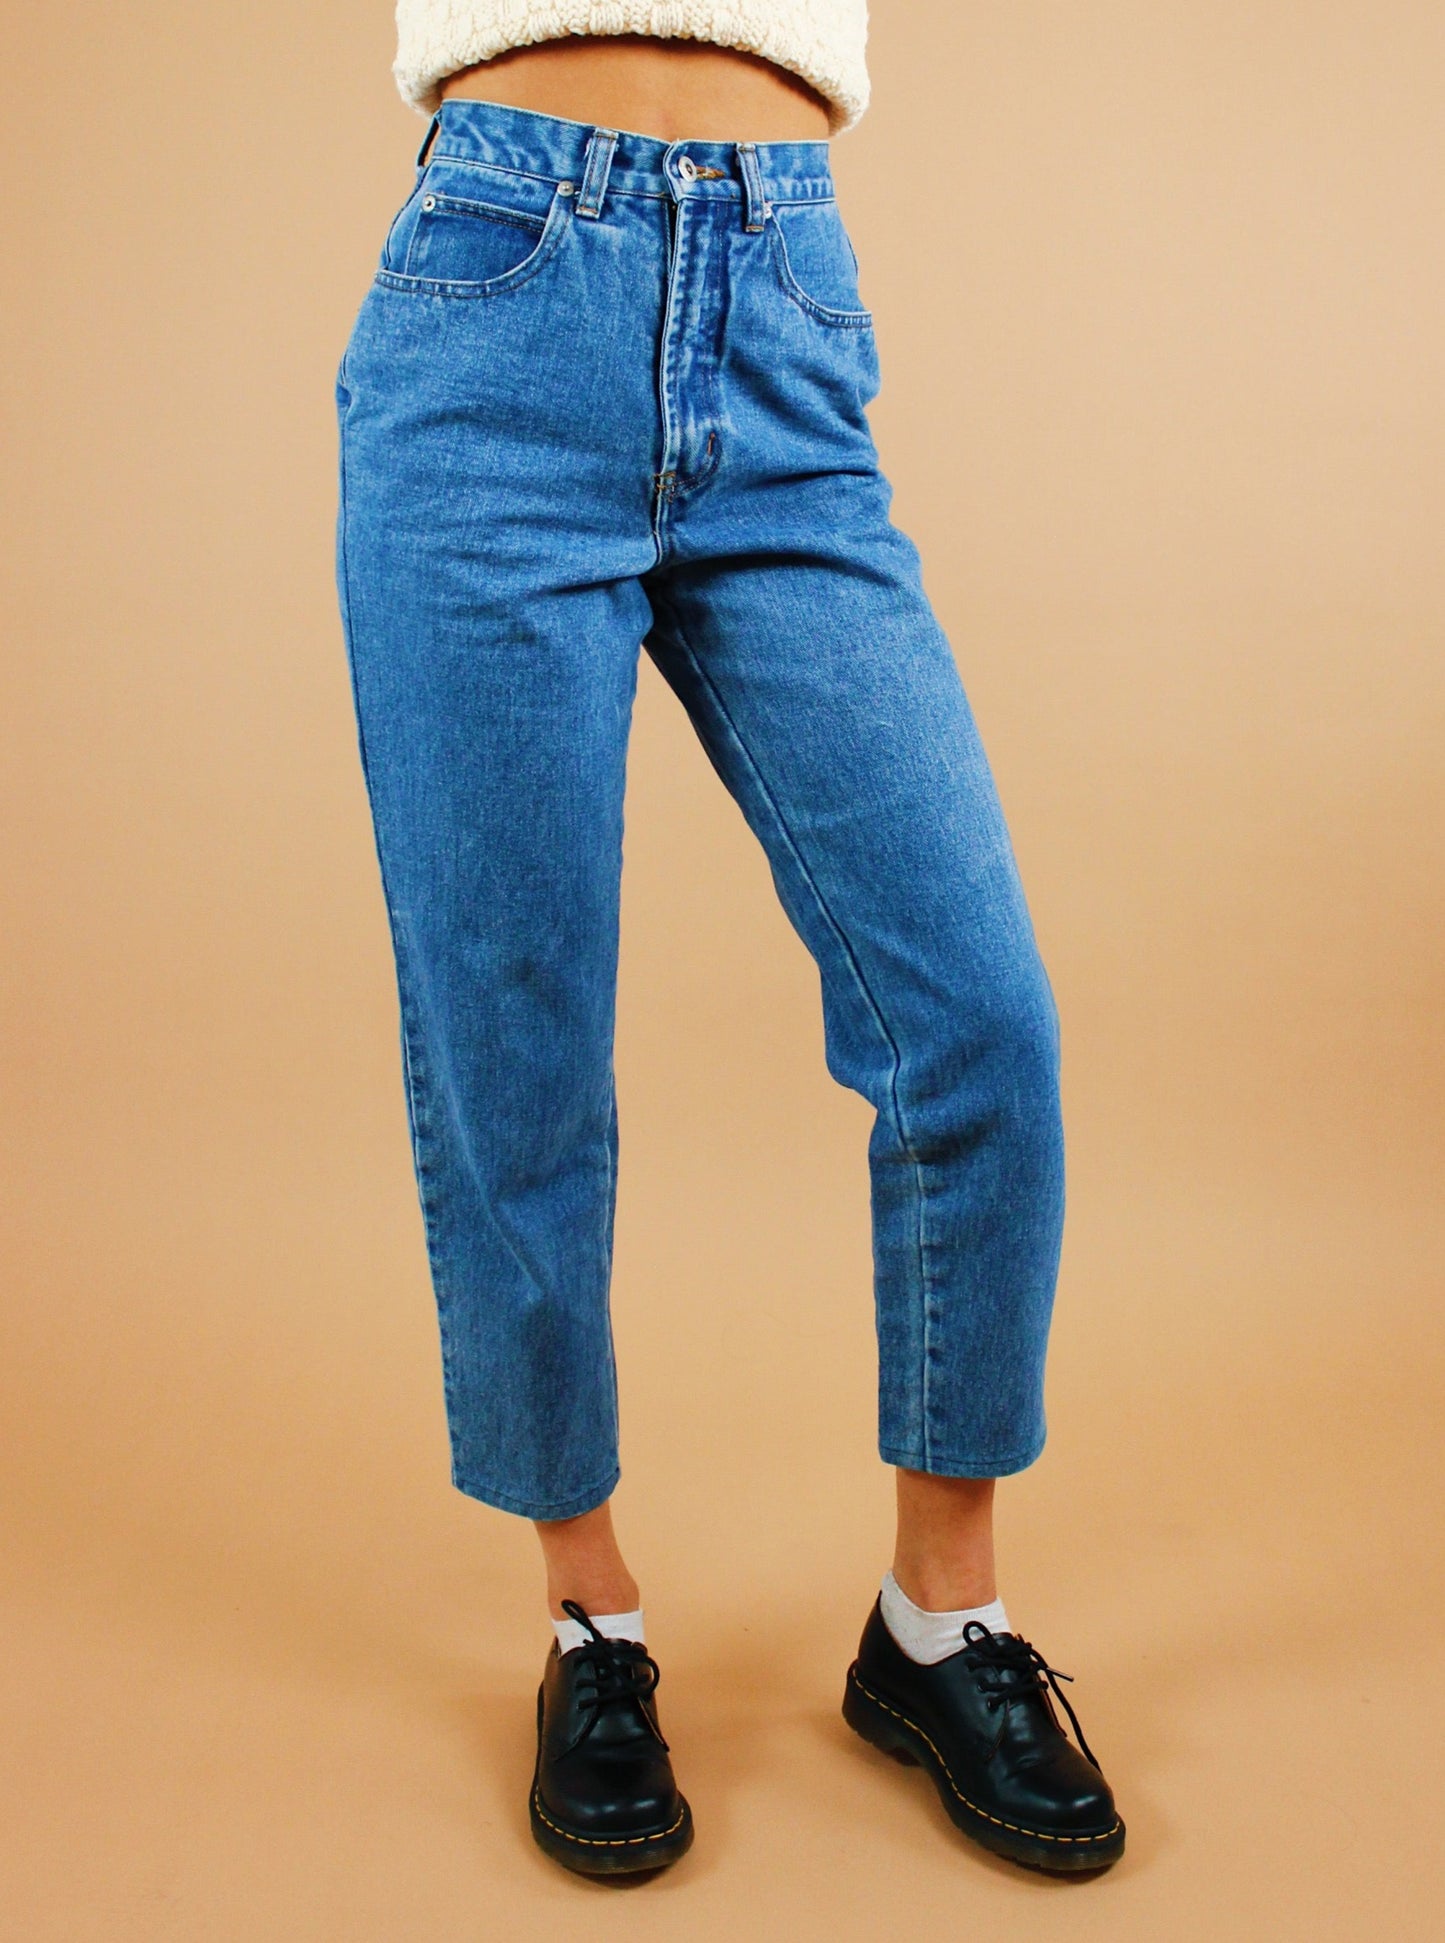 1990s Heartbreaker Jeans